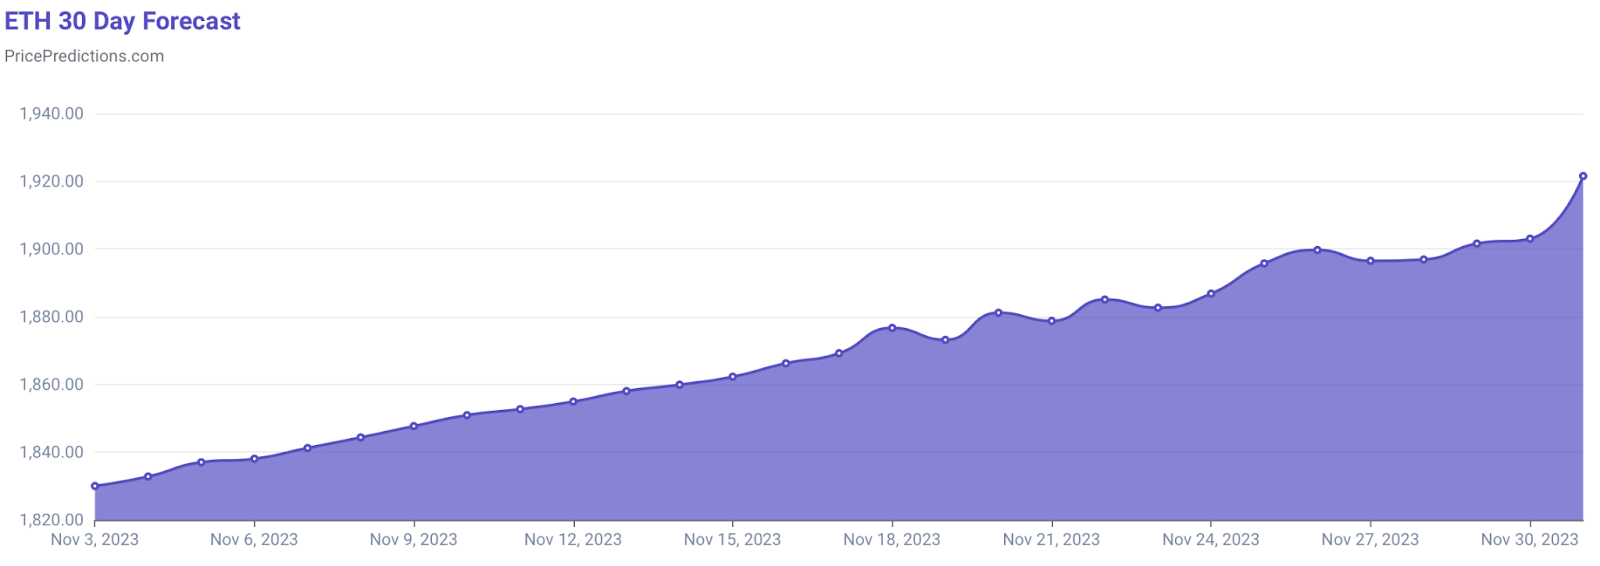 Yapay zeka Ethereum'un 30 Kasım fiyatını tahmin etti.